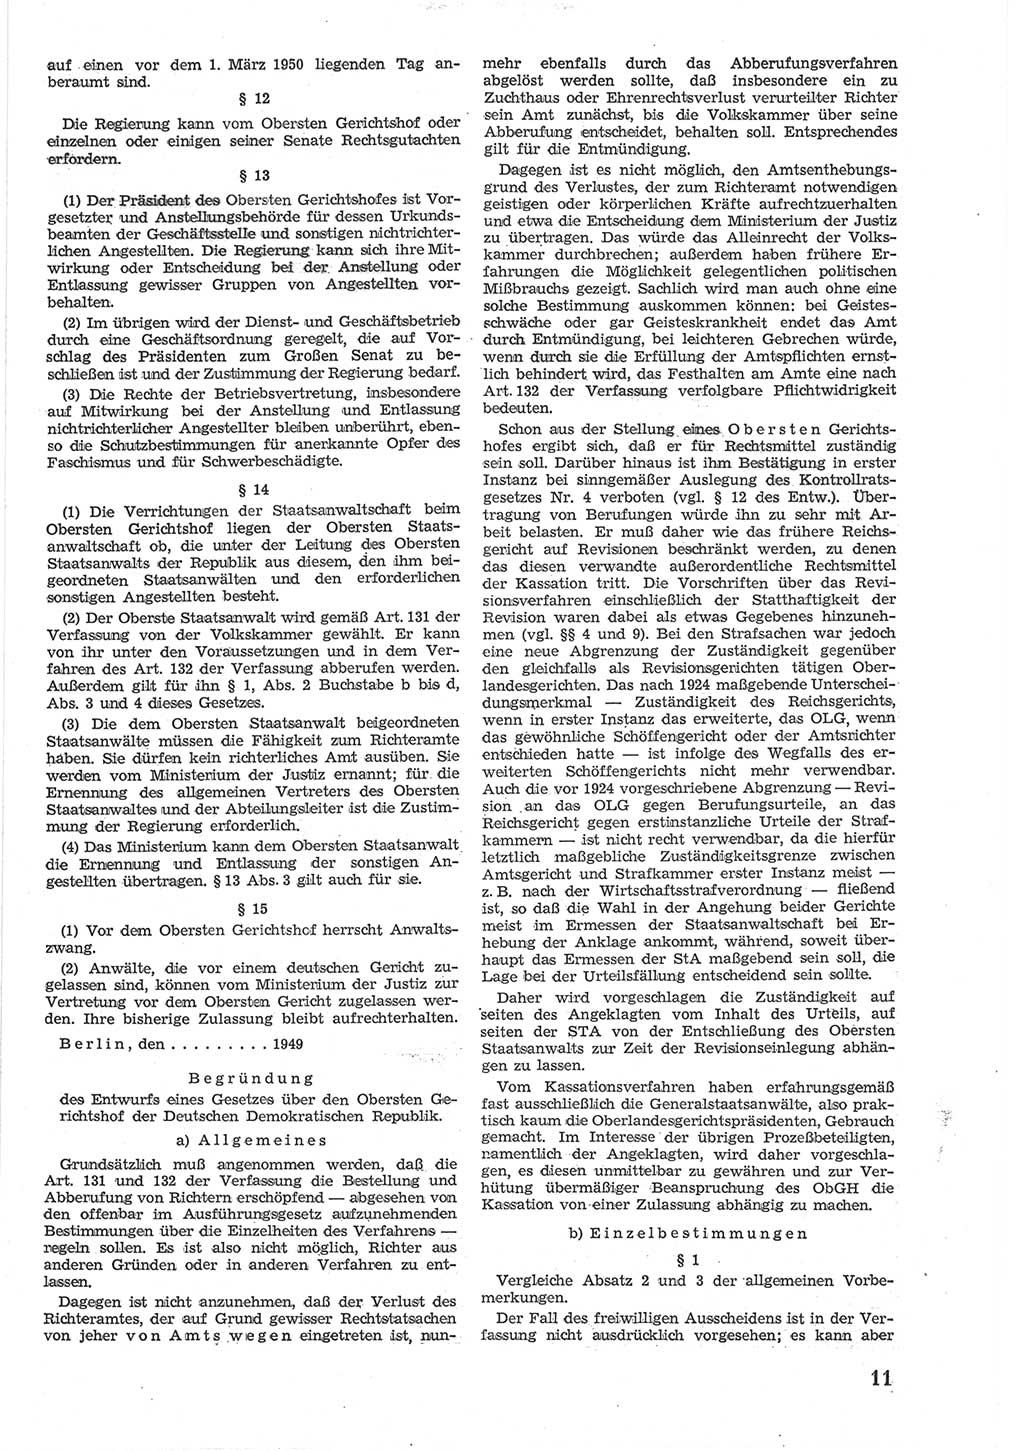 Provisorische Volkskammer (VK) der Deutschen Demokratischen Republik (DDR) 1949-1950, Dokument 579 (Prov. VK DDR 1949-1950, Dok. 579)